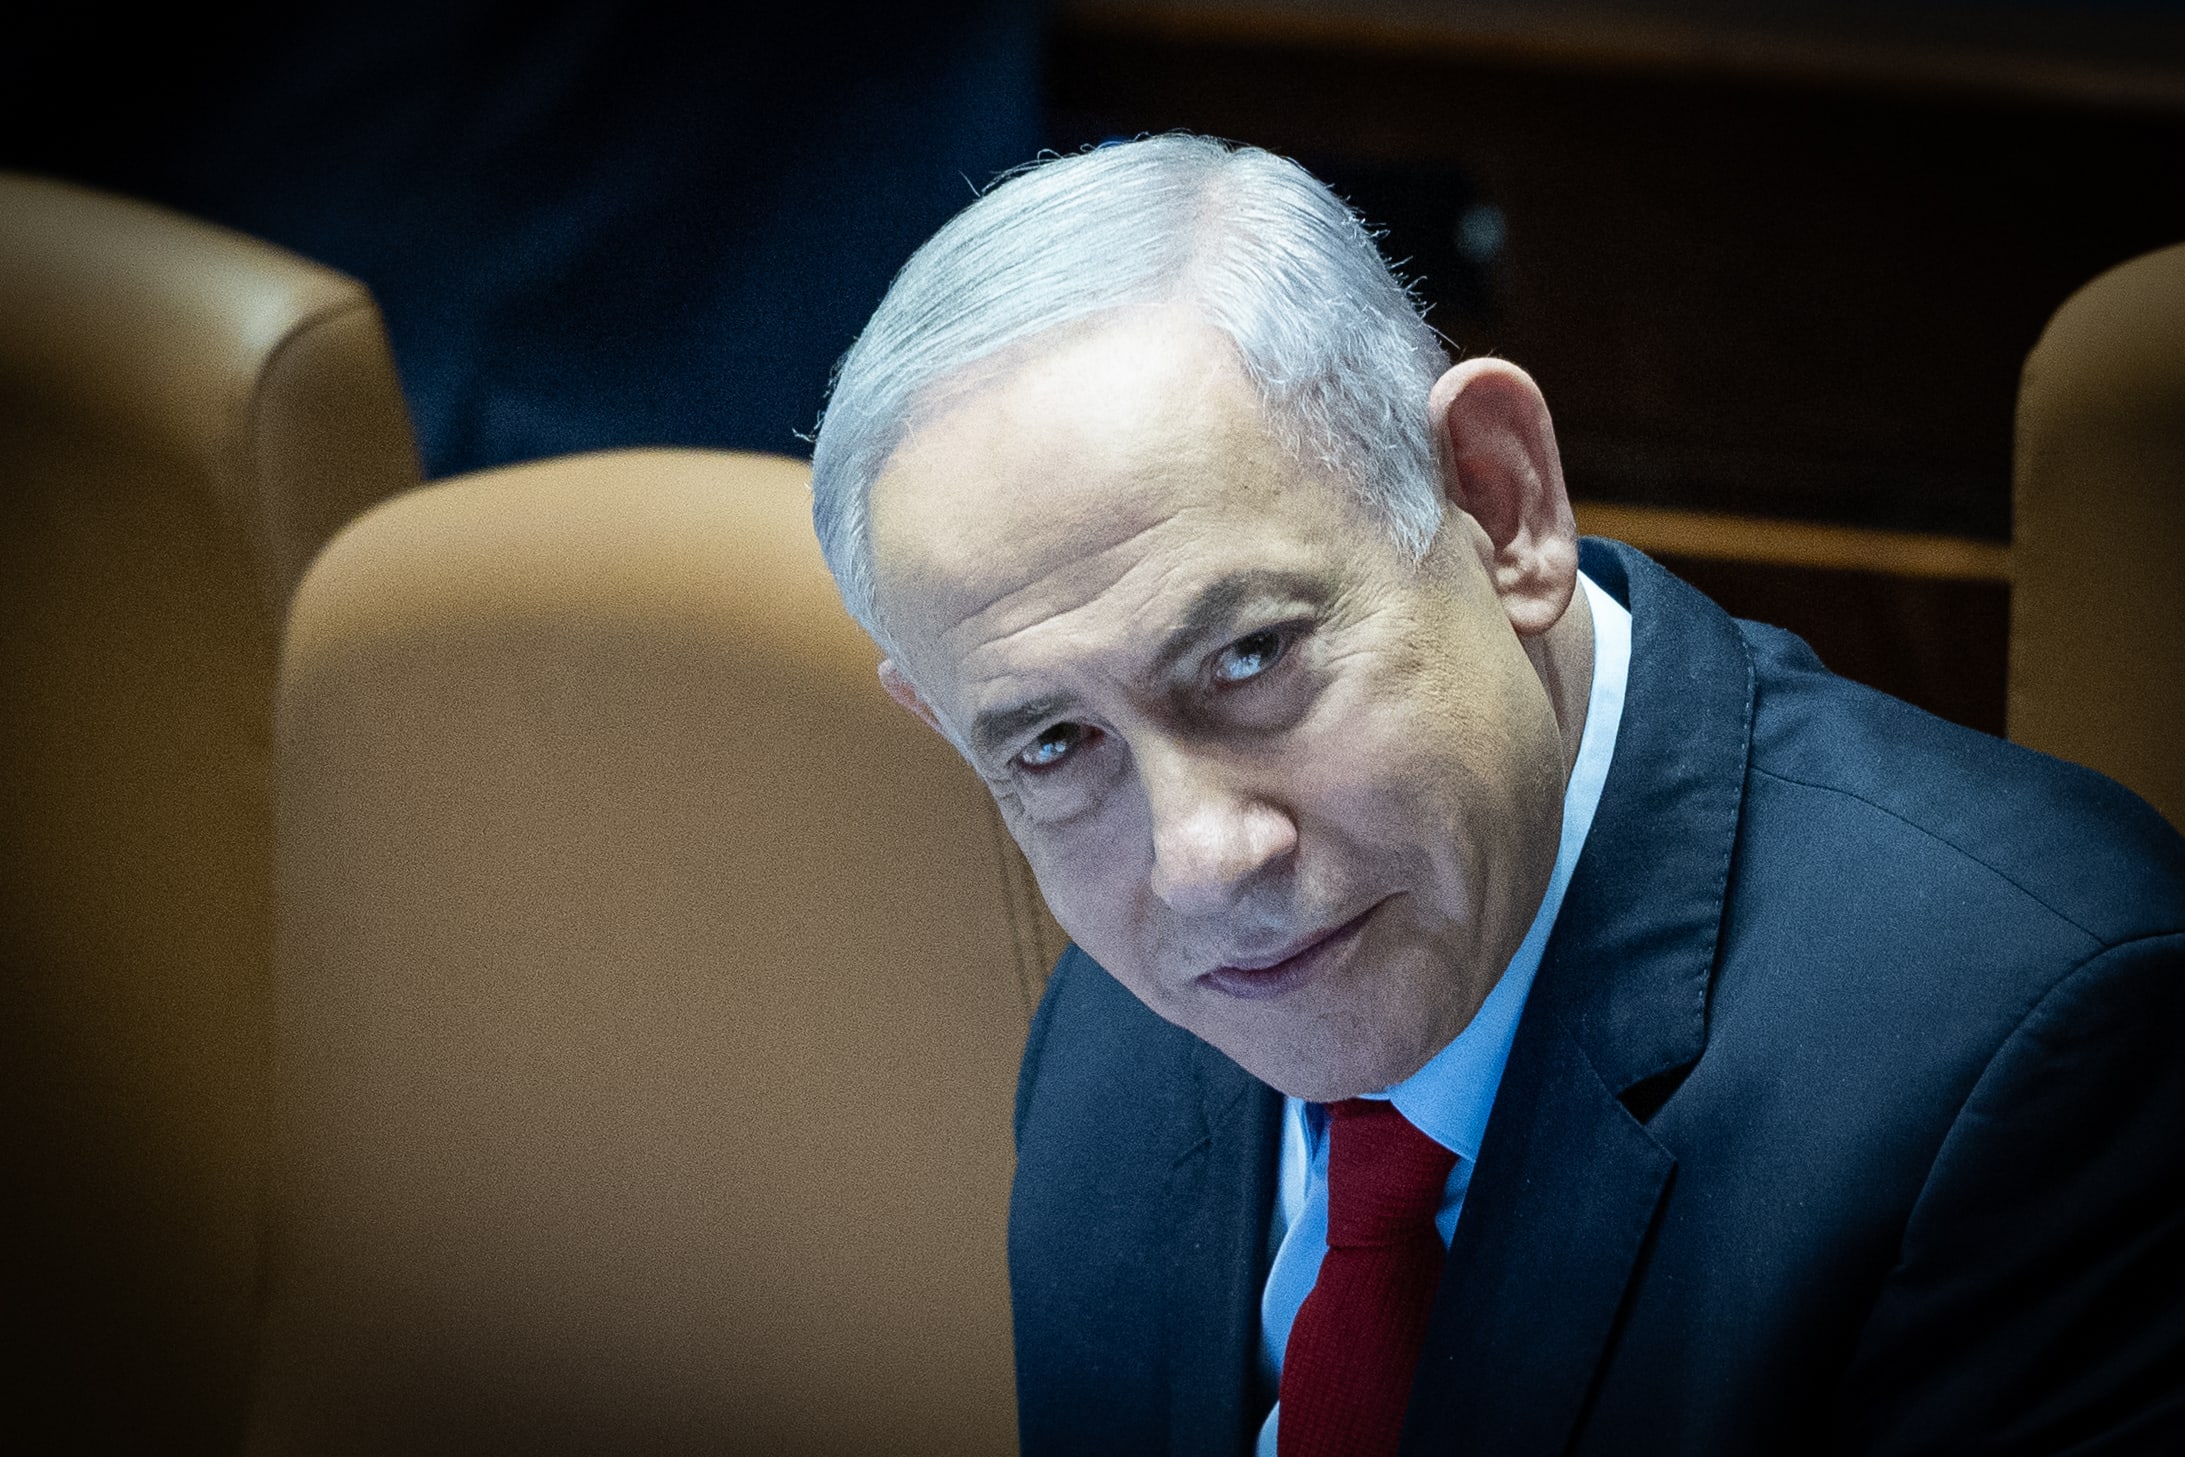 בנימין נתניהו, ראש ממשלת ישראל ונאשם מס' 1 במשפט המו"לים, החודש בכנסת (צילום: יונתן זינדל)